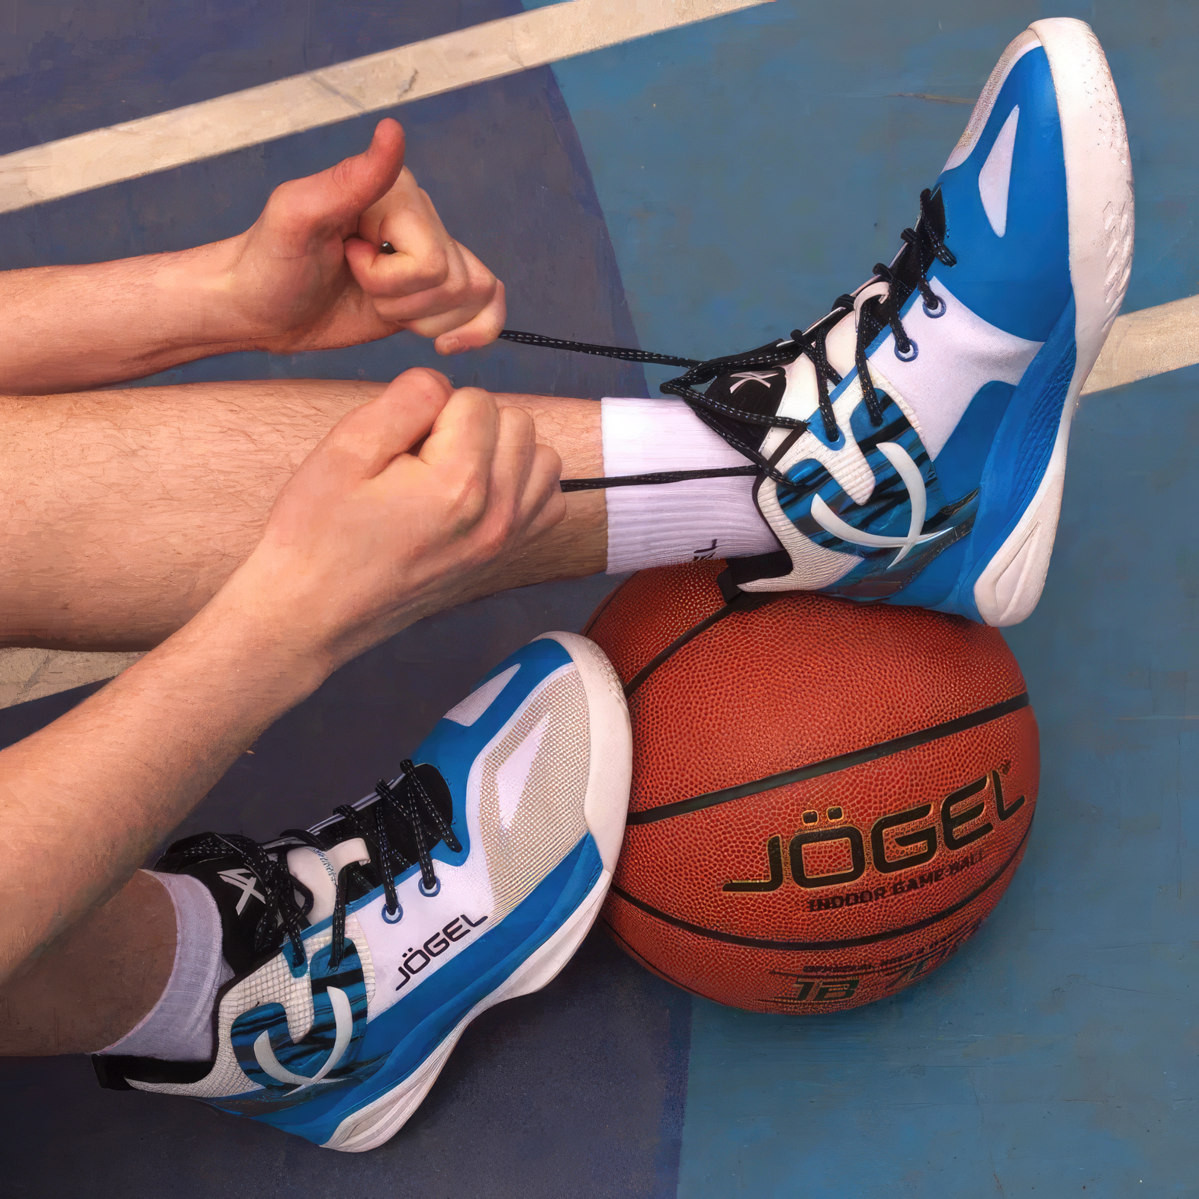 Российский бренд Jögel представил новые кроссовки для баскетбола